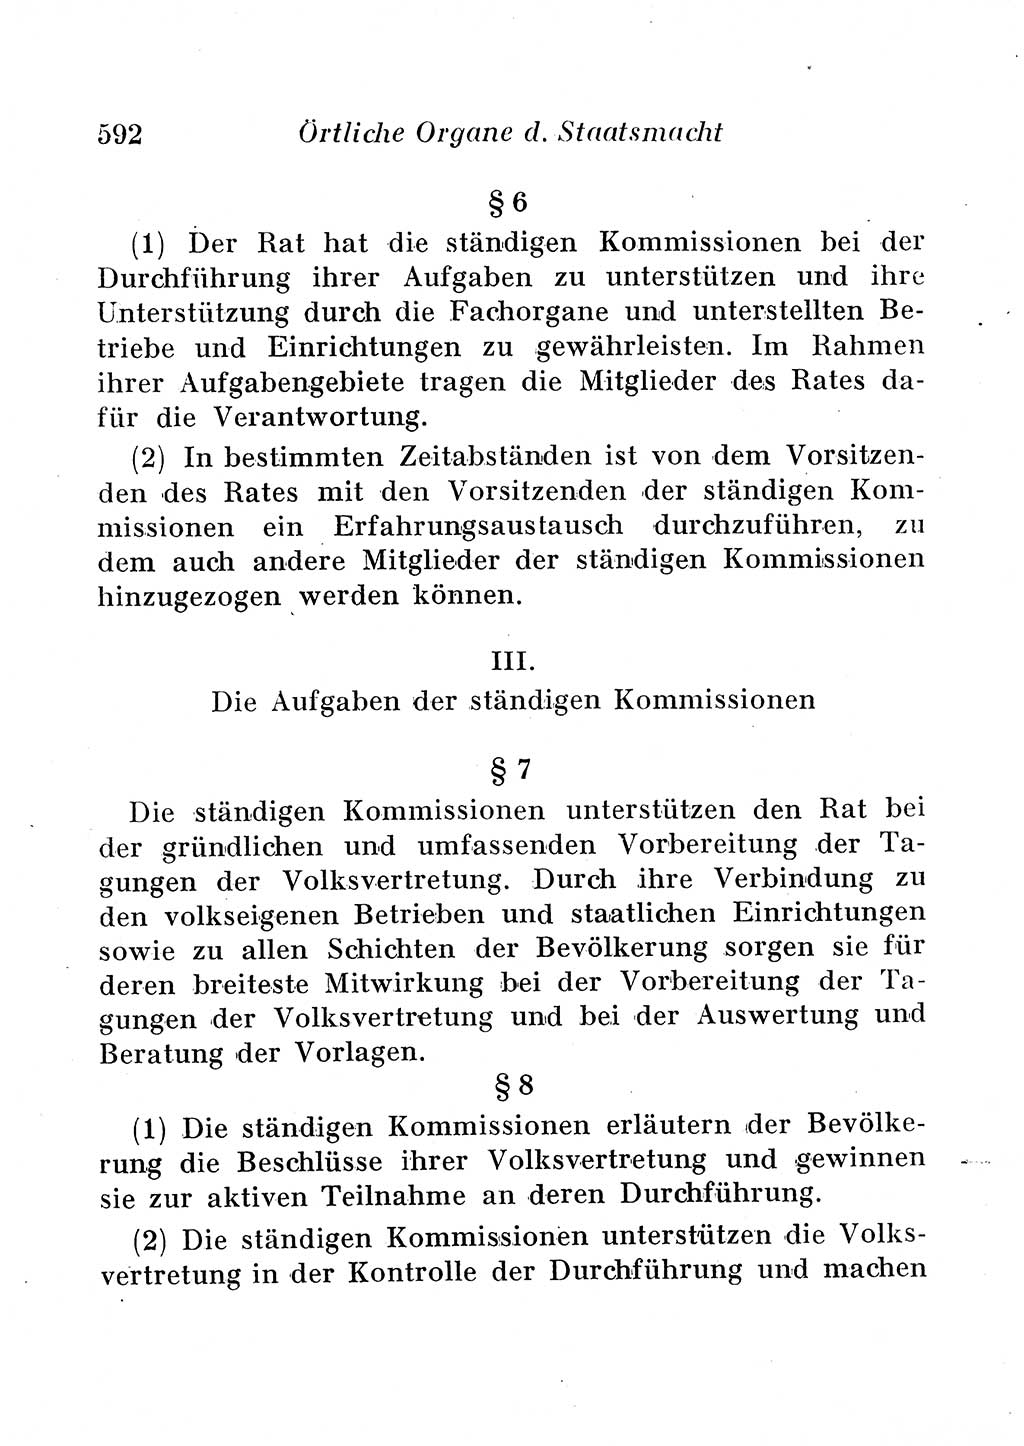 Staats- und verwaltungsrechtliche Gesetze der Deutschen Demokratischen Republik (DDR) 1958, Seite 592 (StVerwR Ges. DDR 1958, S. 592)